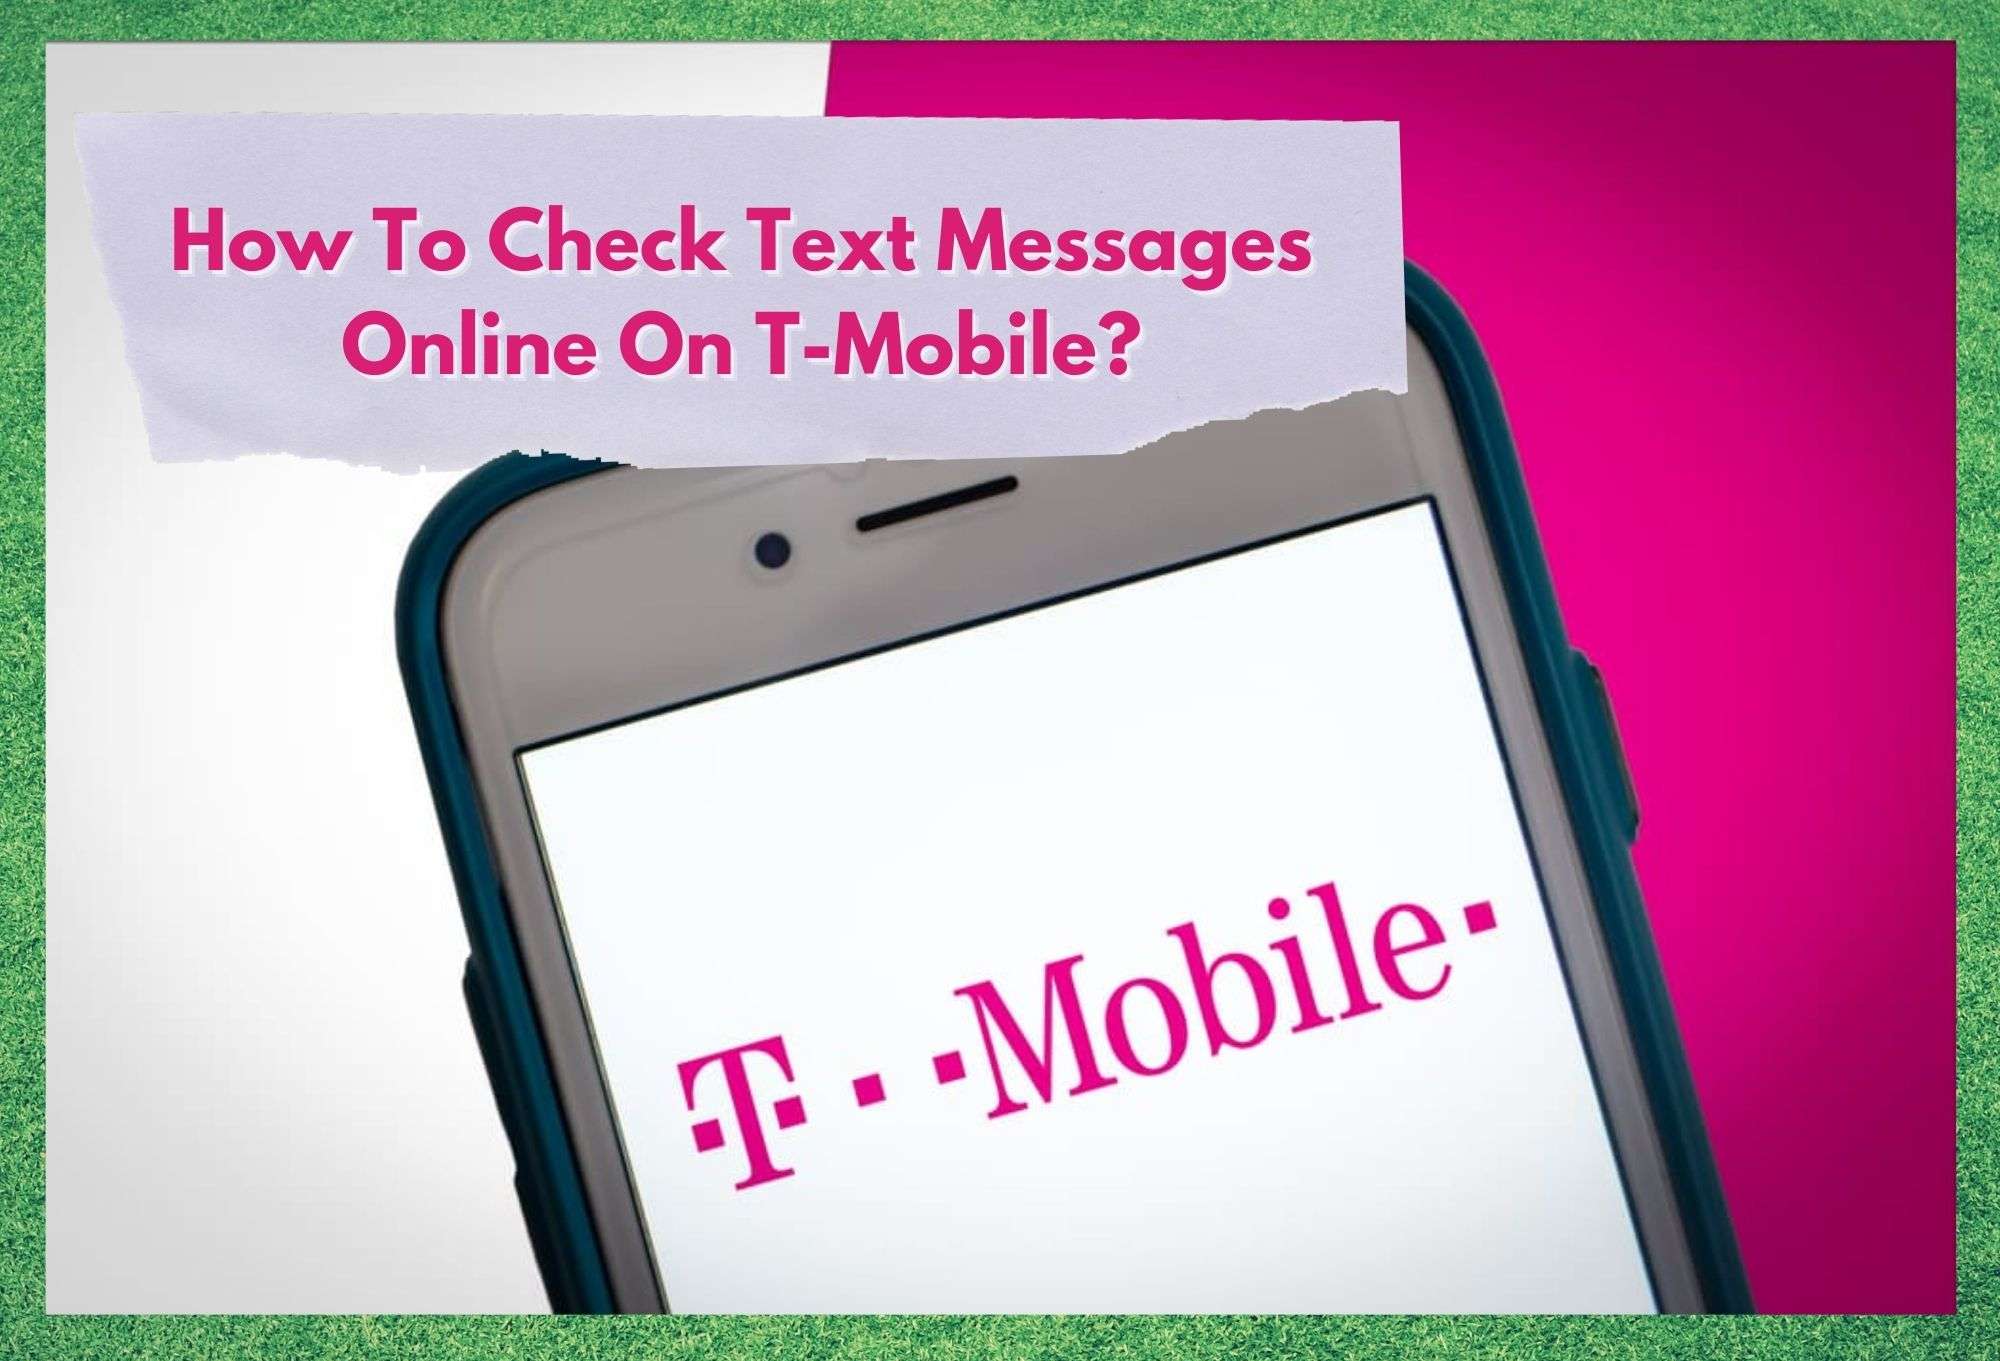 په T-Mobile کې آنلاین متن پیغامونه څنګه چیک کړئ؟